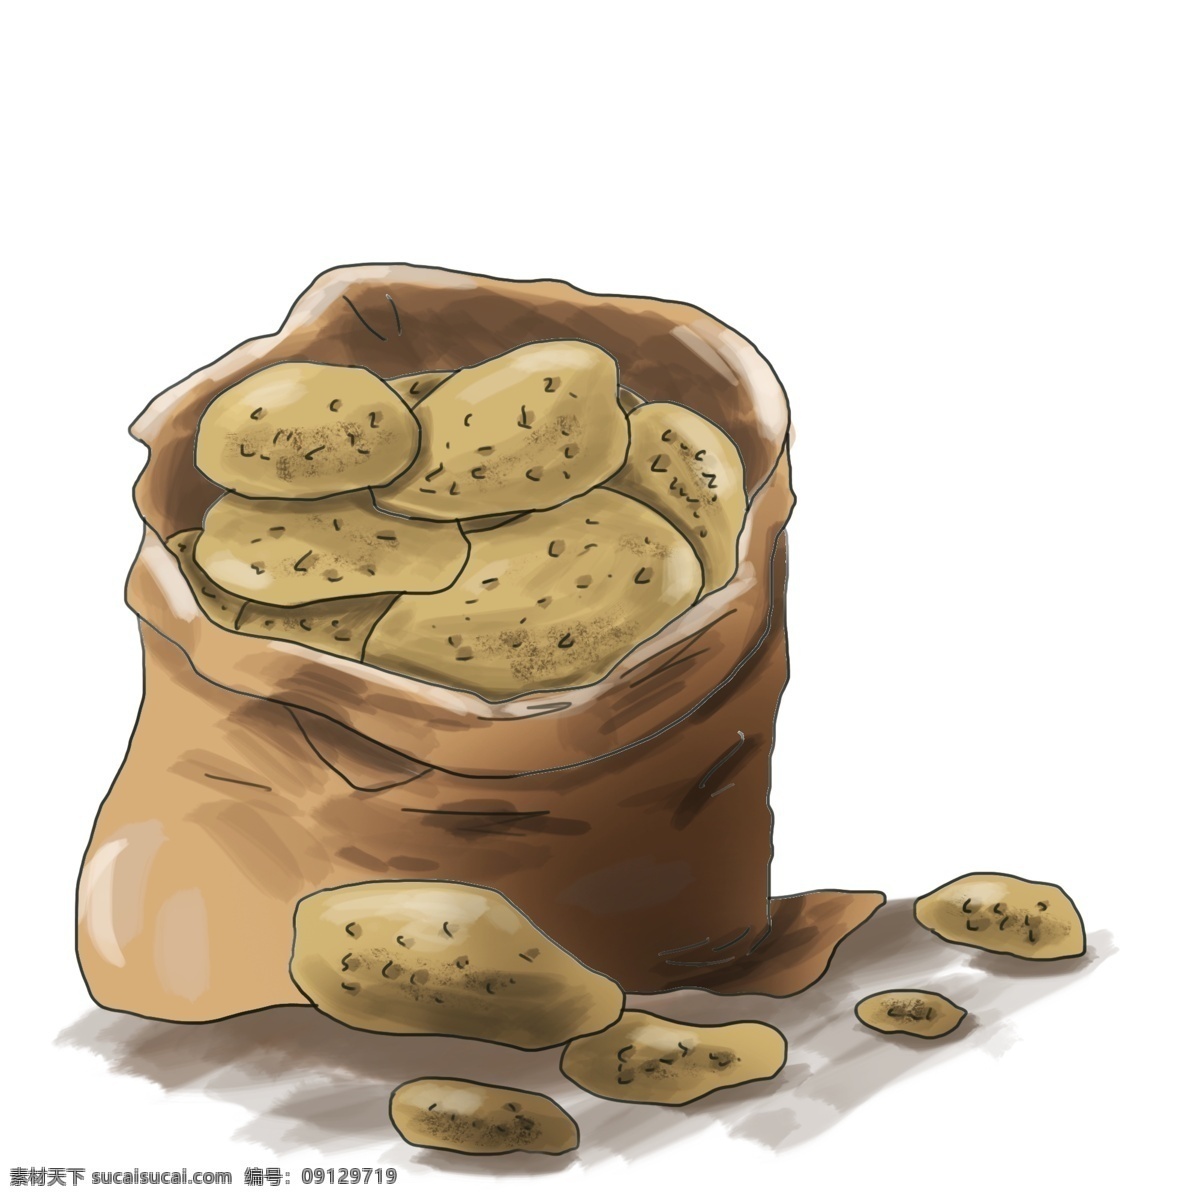 袋 土豆 插画 蔬菜 土黄色 马铃薯 麻袋 果蔬 淀粉 健康 健身 减肥 土豆泥 一袋土豆 泥巴 种地 卡路里